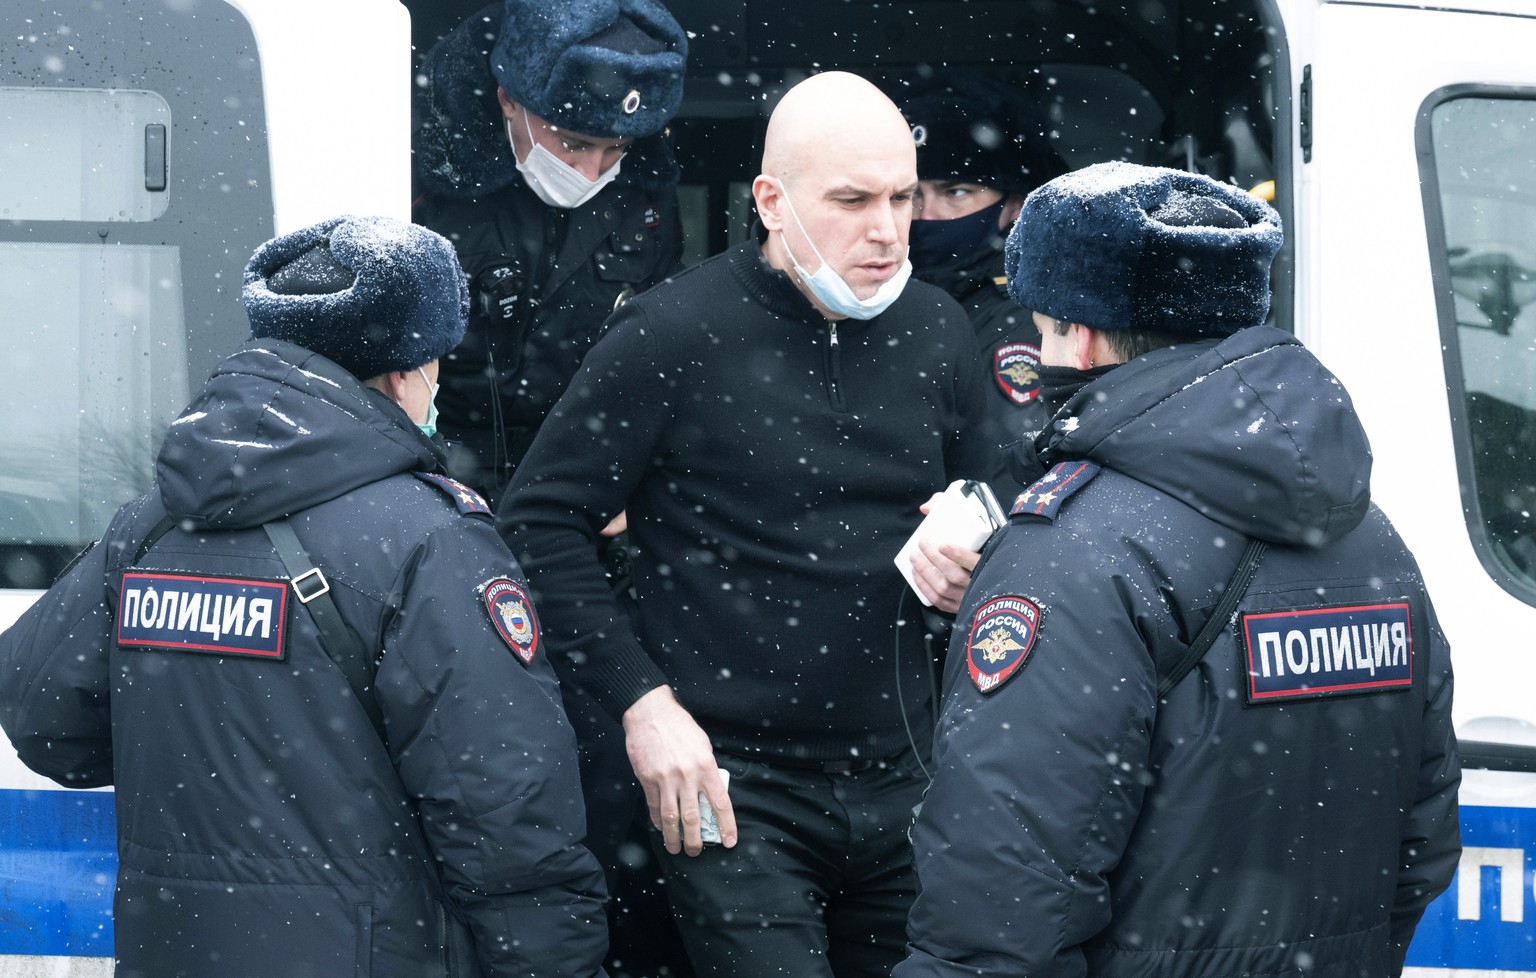 Einer der in Moskau verhafteten Oppositionspolitiker.